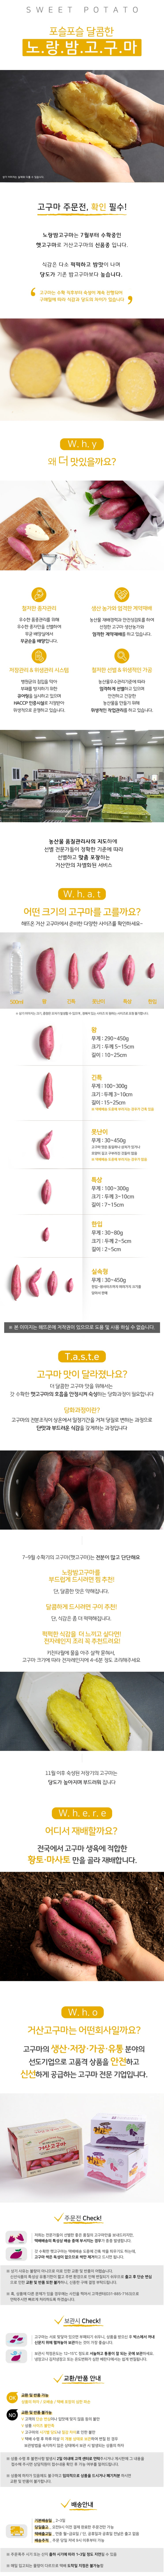 신품종 달콤한 노랑 밤고구마(5KG)